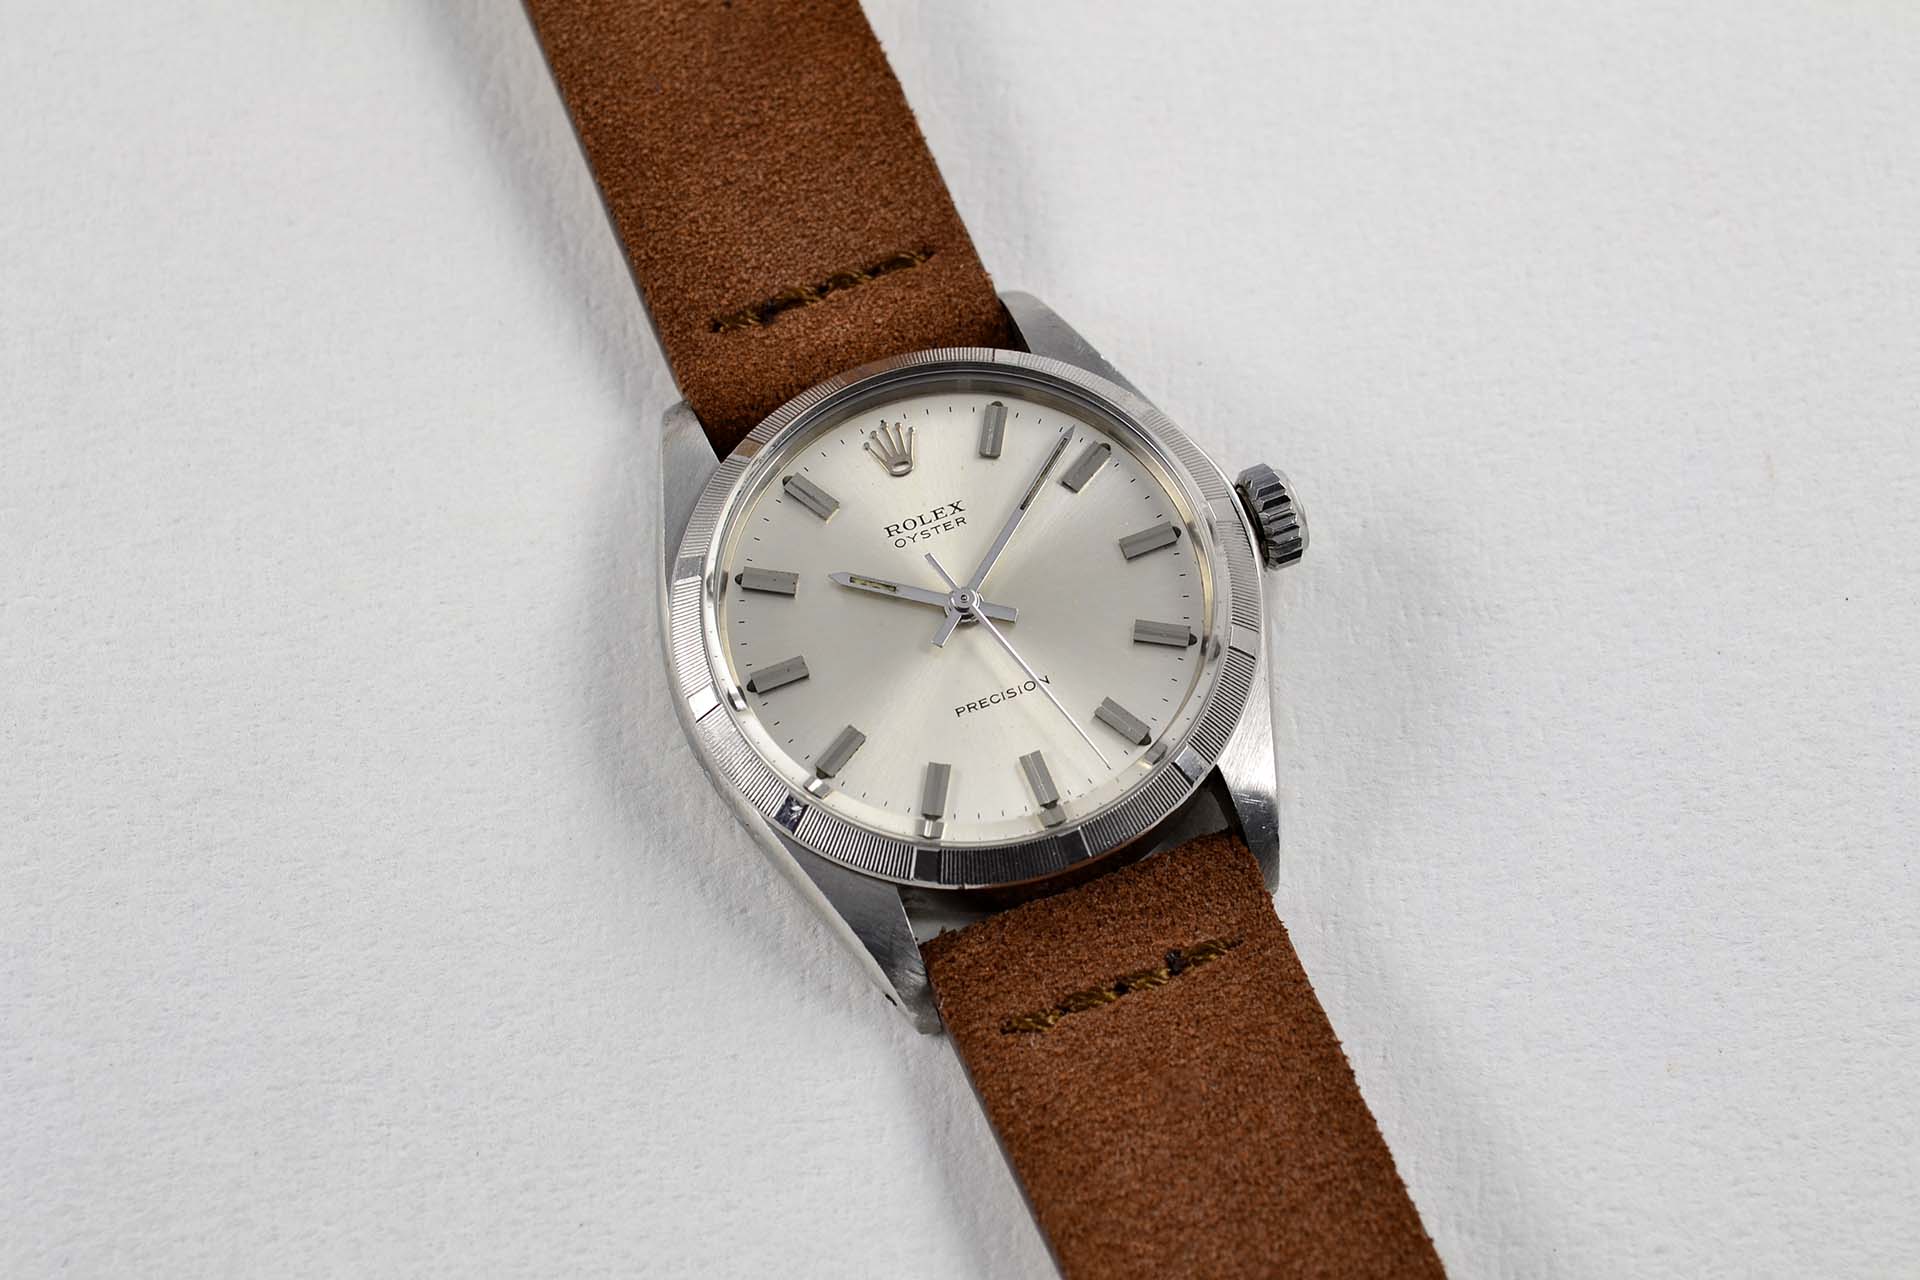 Rolex 6427 Precision oyster montre vintage lumeville horloger